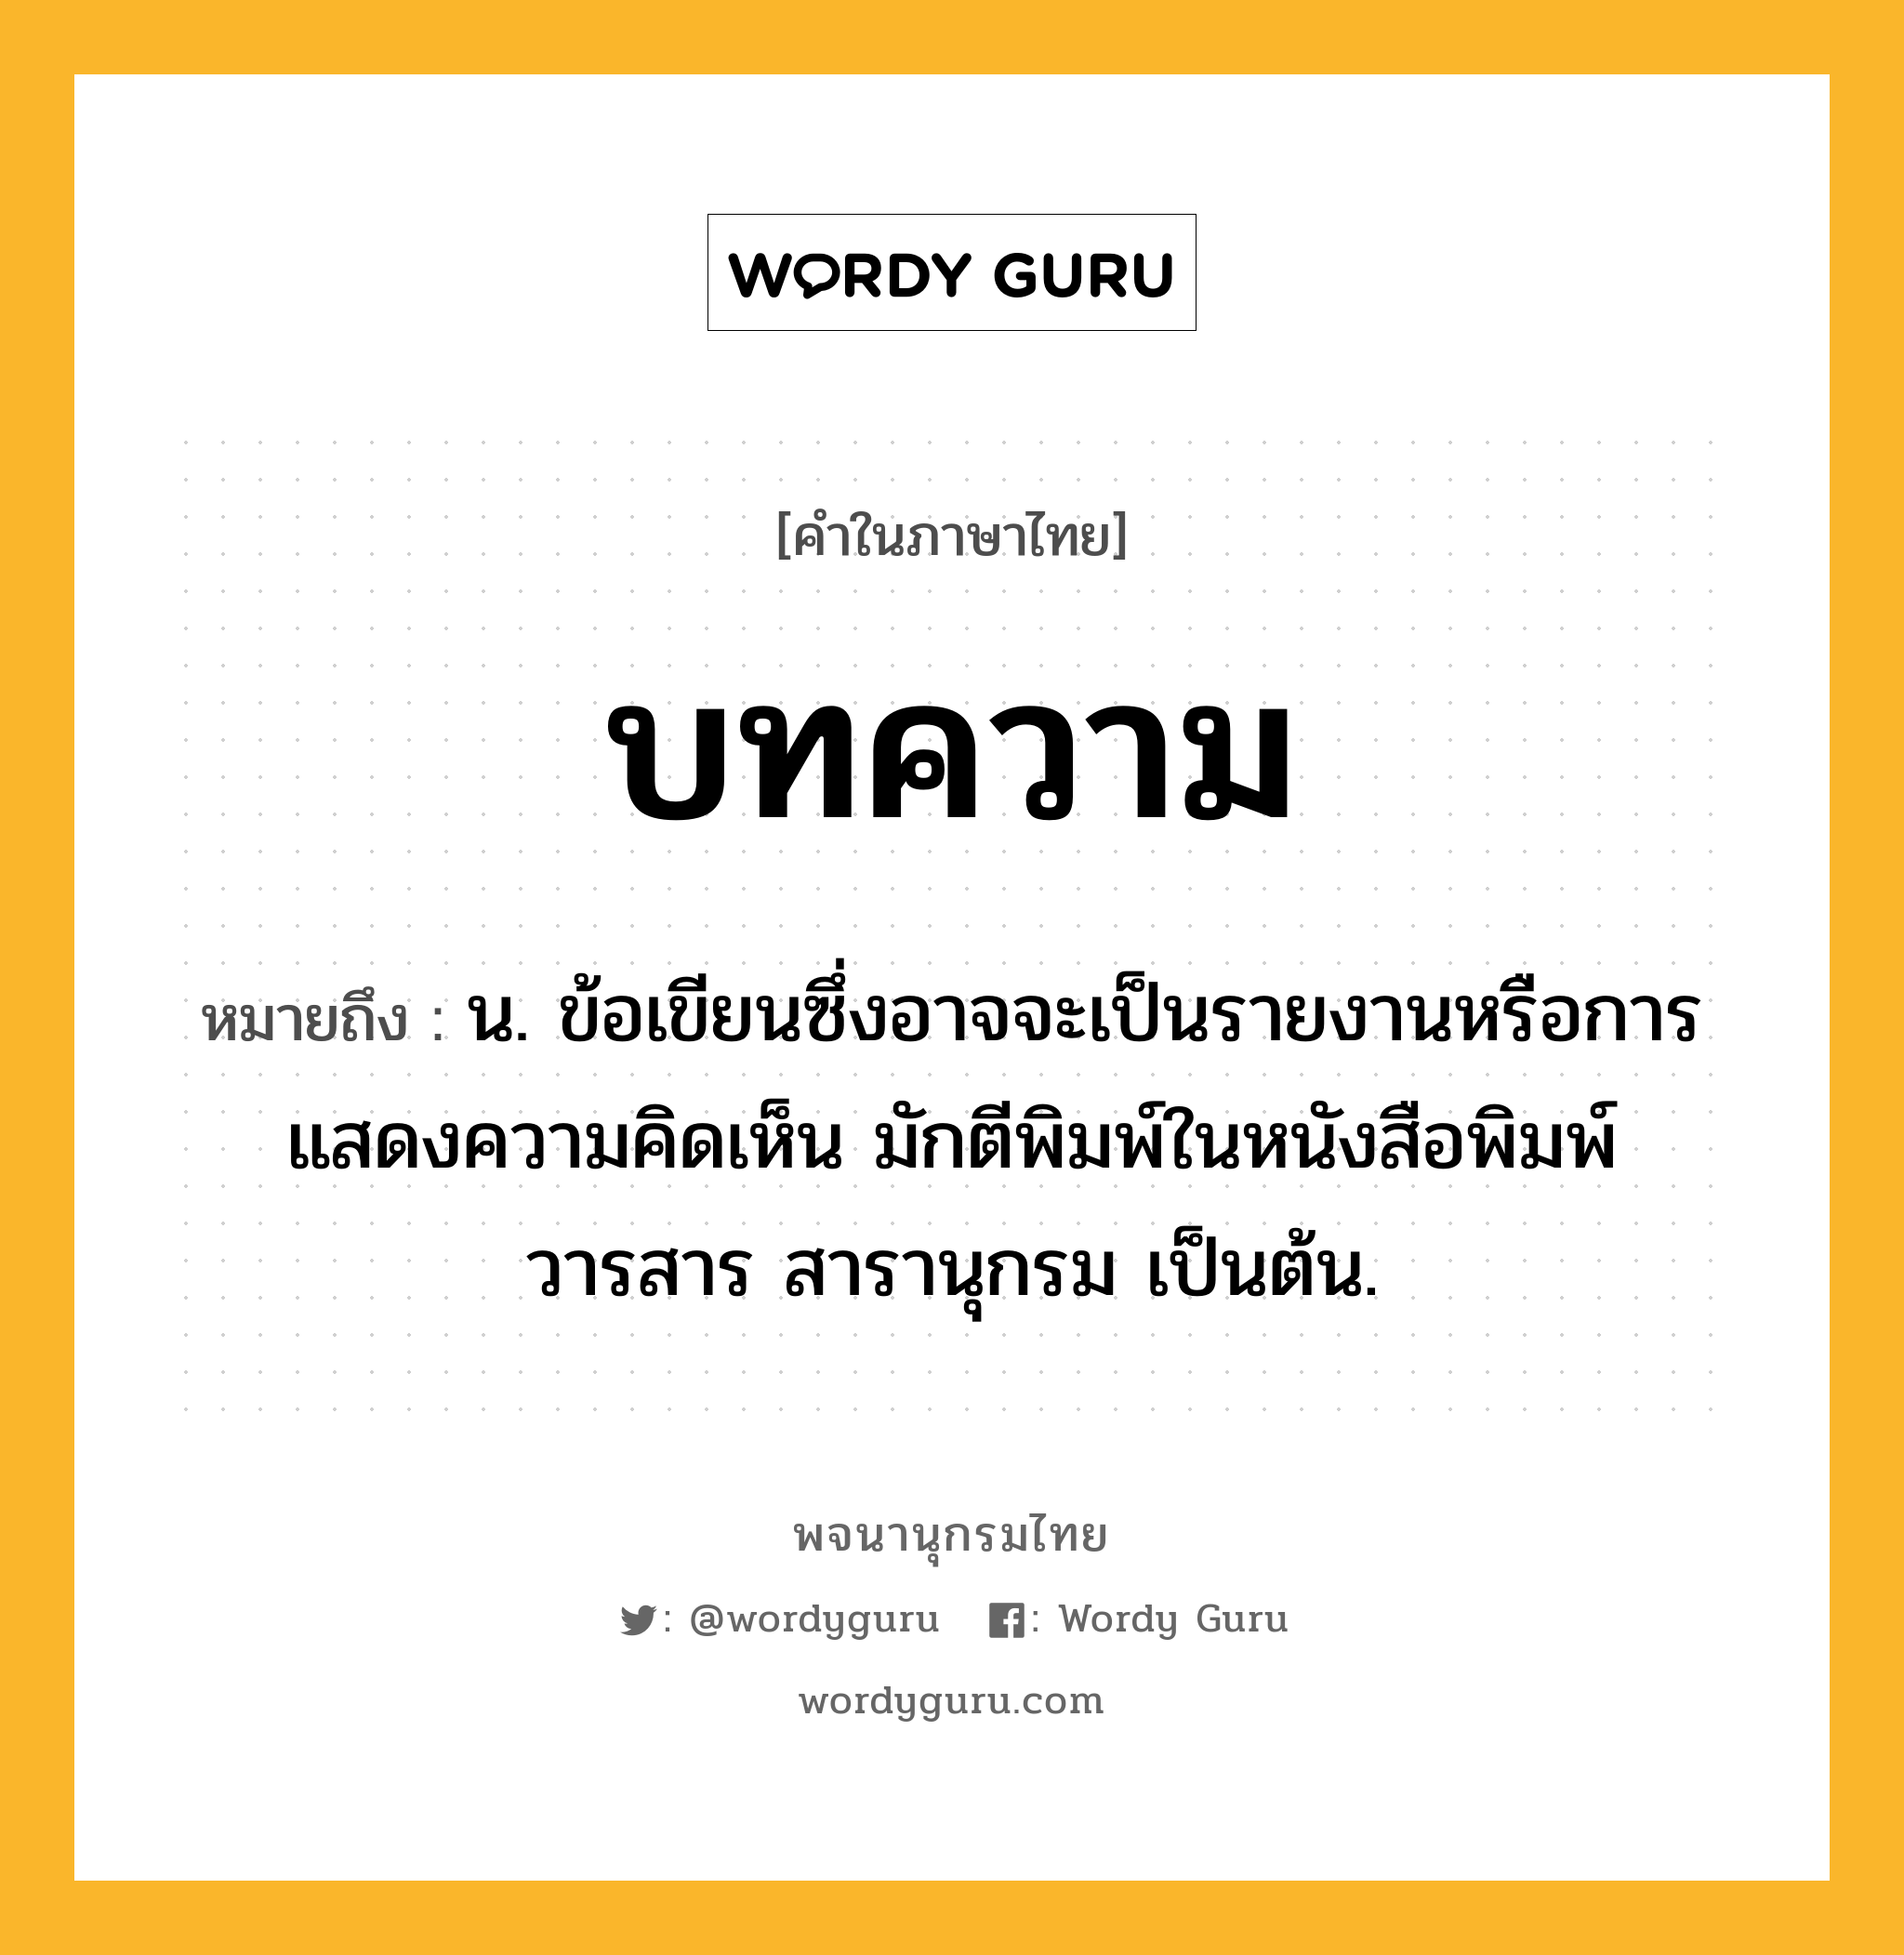 บทความ หมายถึงอะไร?, คำในภาษาไทย บทความ หมายถึง น. ข้อเขียนซึ่งอาจจะเป็นรายงานหรือการแสดงความคิดเห็น มักตีพิมพ์ในหนังสือพิมพ์ วารสาร สารานุกรม เป็นต้น.